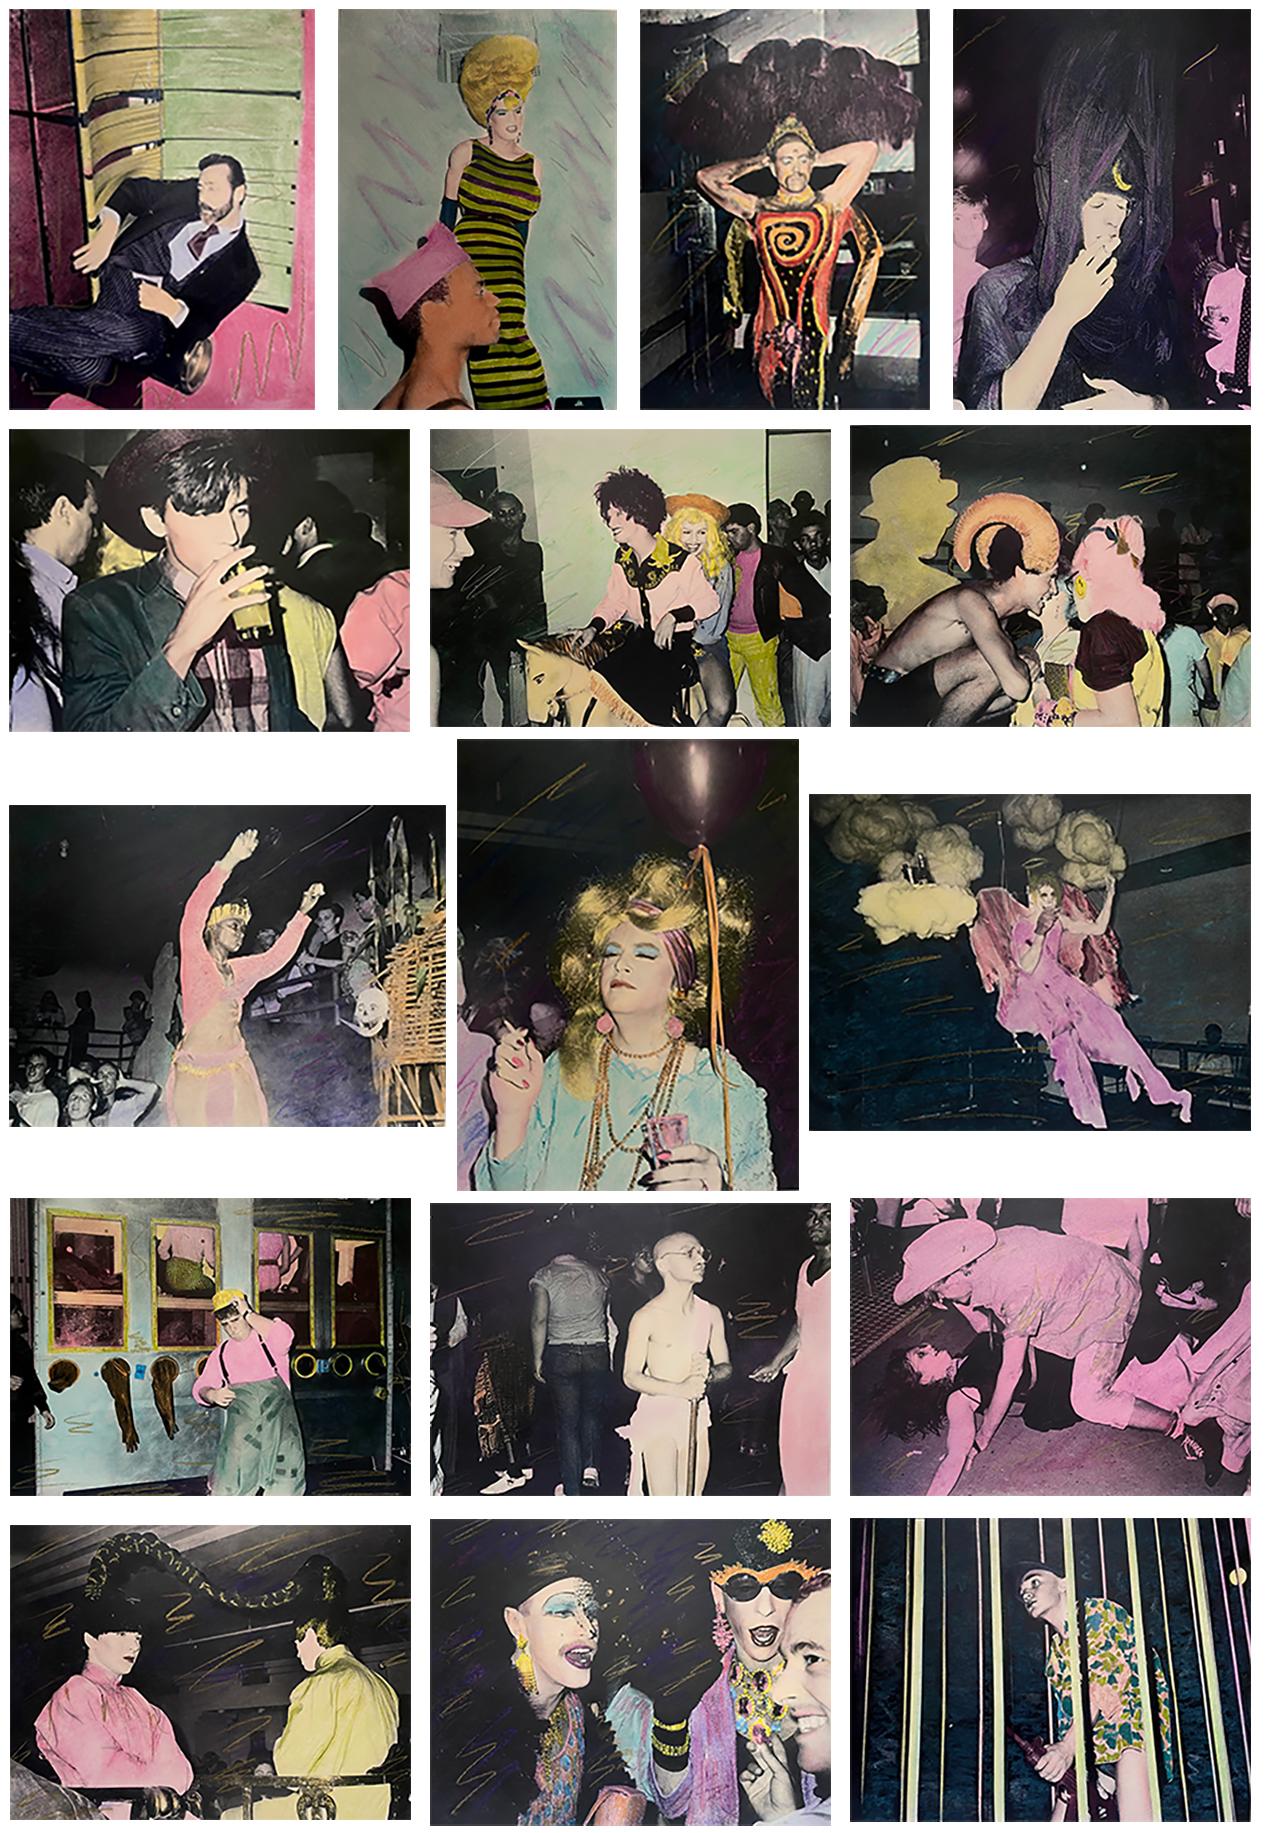 Fernando Natalici Area Nightclub 1983-1987 :
Une collection de 16 photographies couleur à la gélatine argentique couvrant l'histoire de la boîte de nuit new-yorkaise des années 1980 connue sous le nom de "Area". Ces images rares ont été prises par